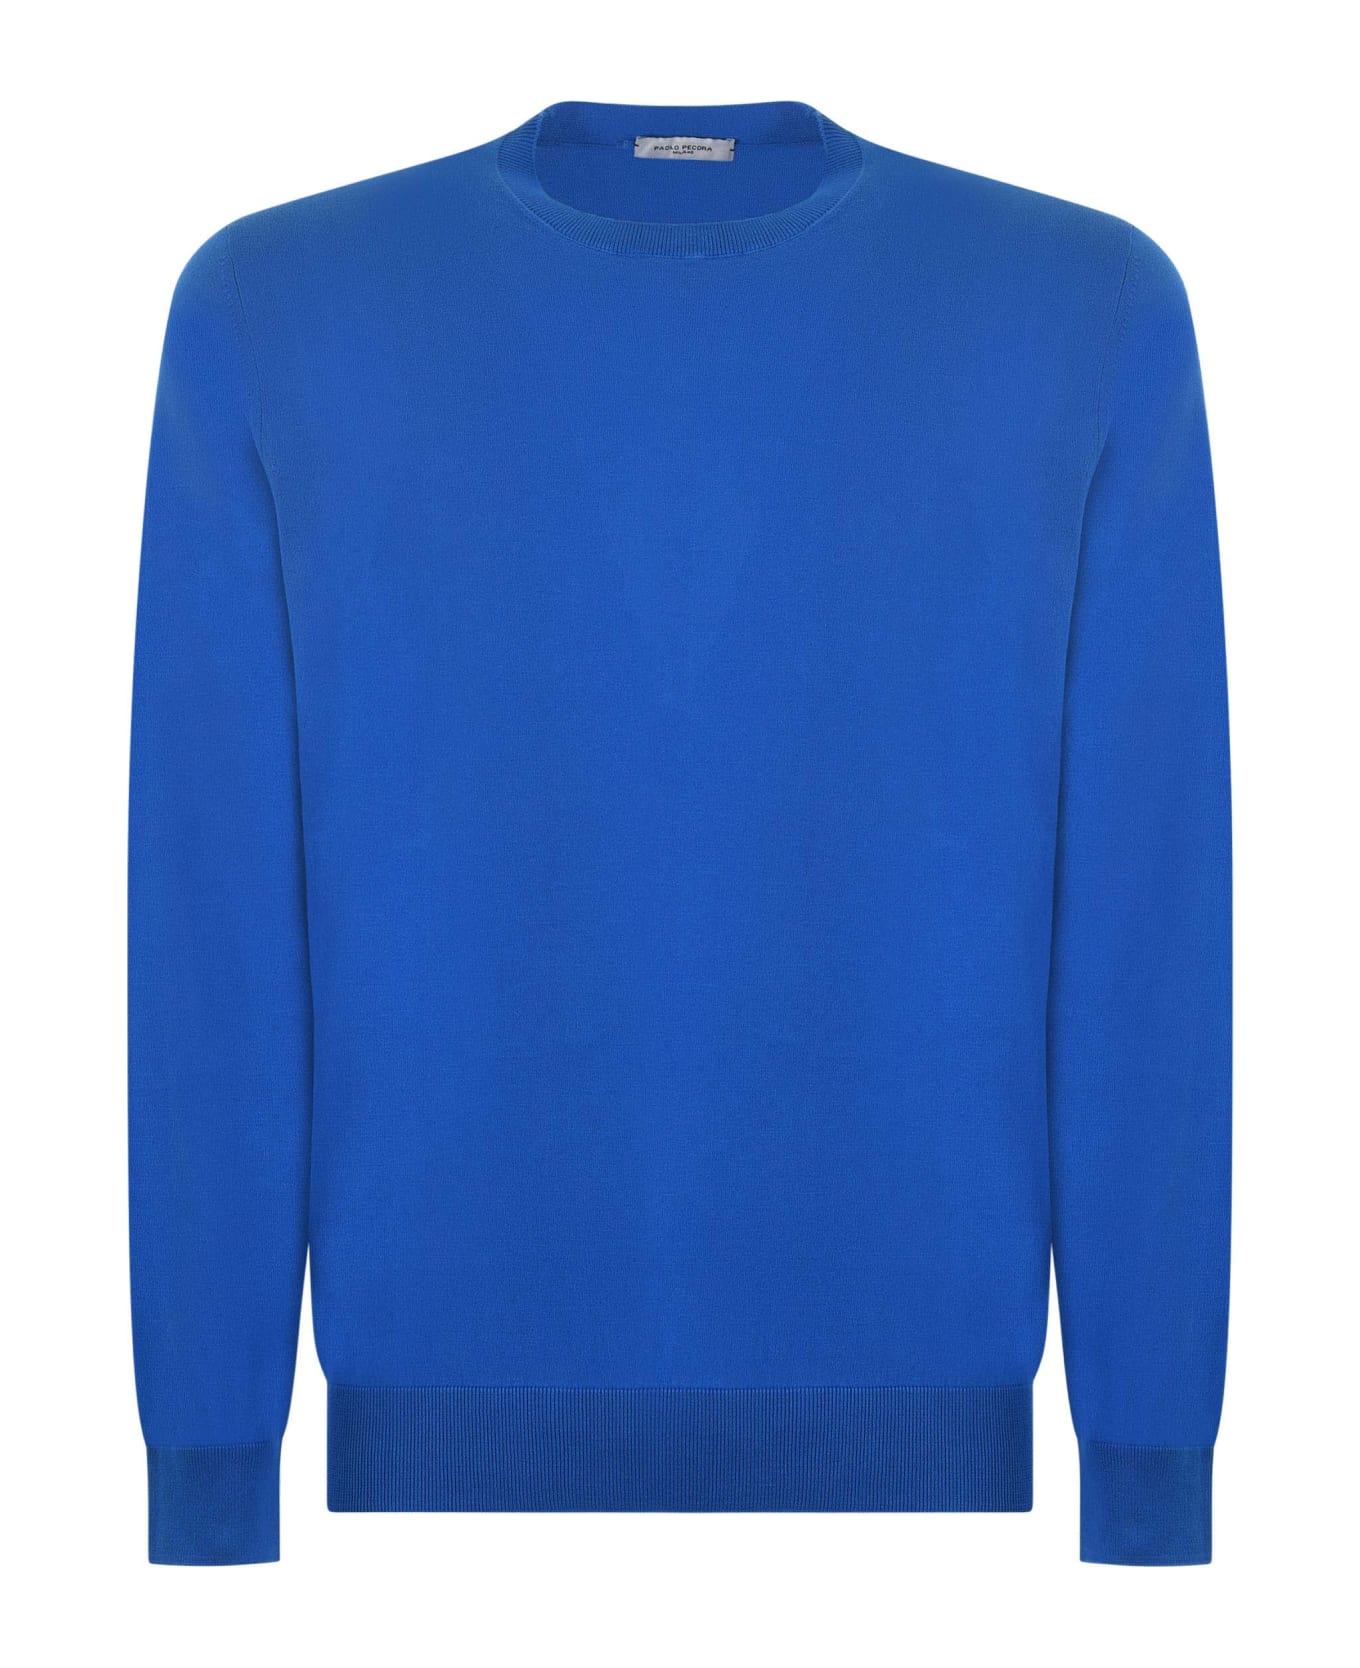 Paolo Pecora Sweater - Azzurro ニットウェア